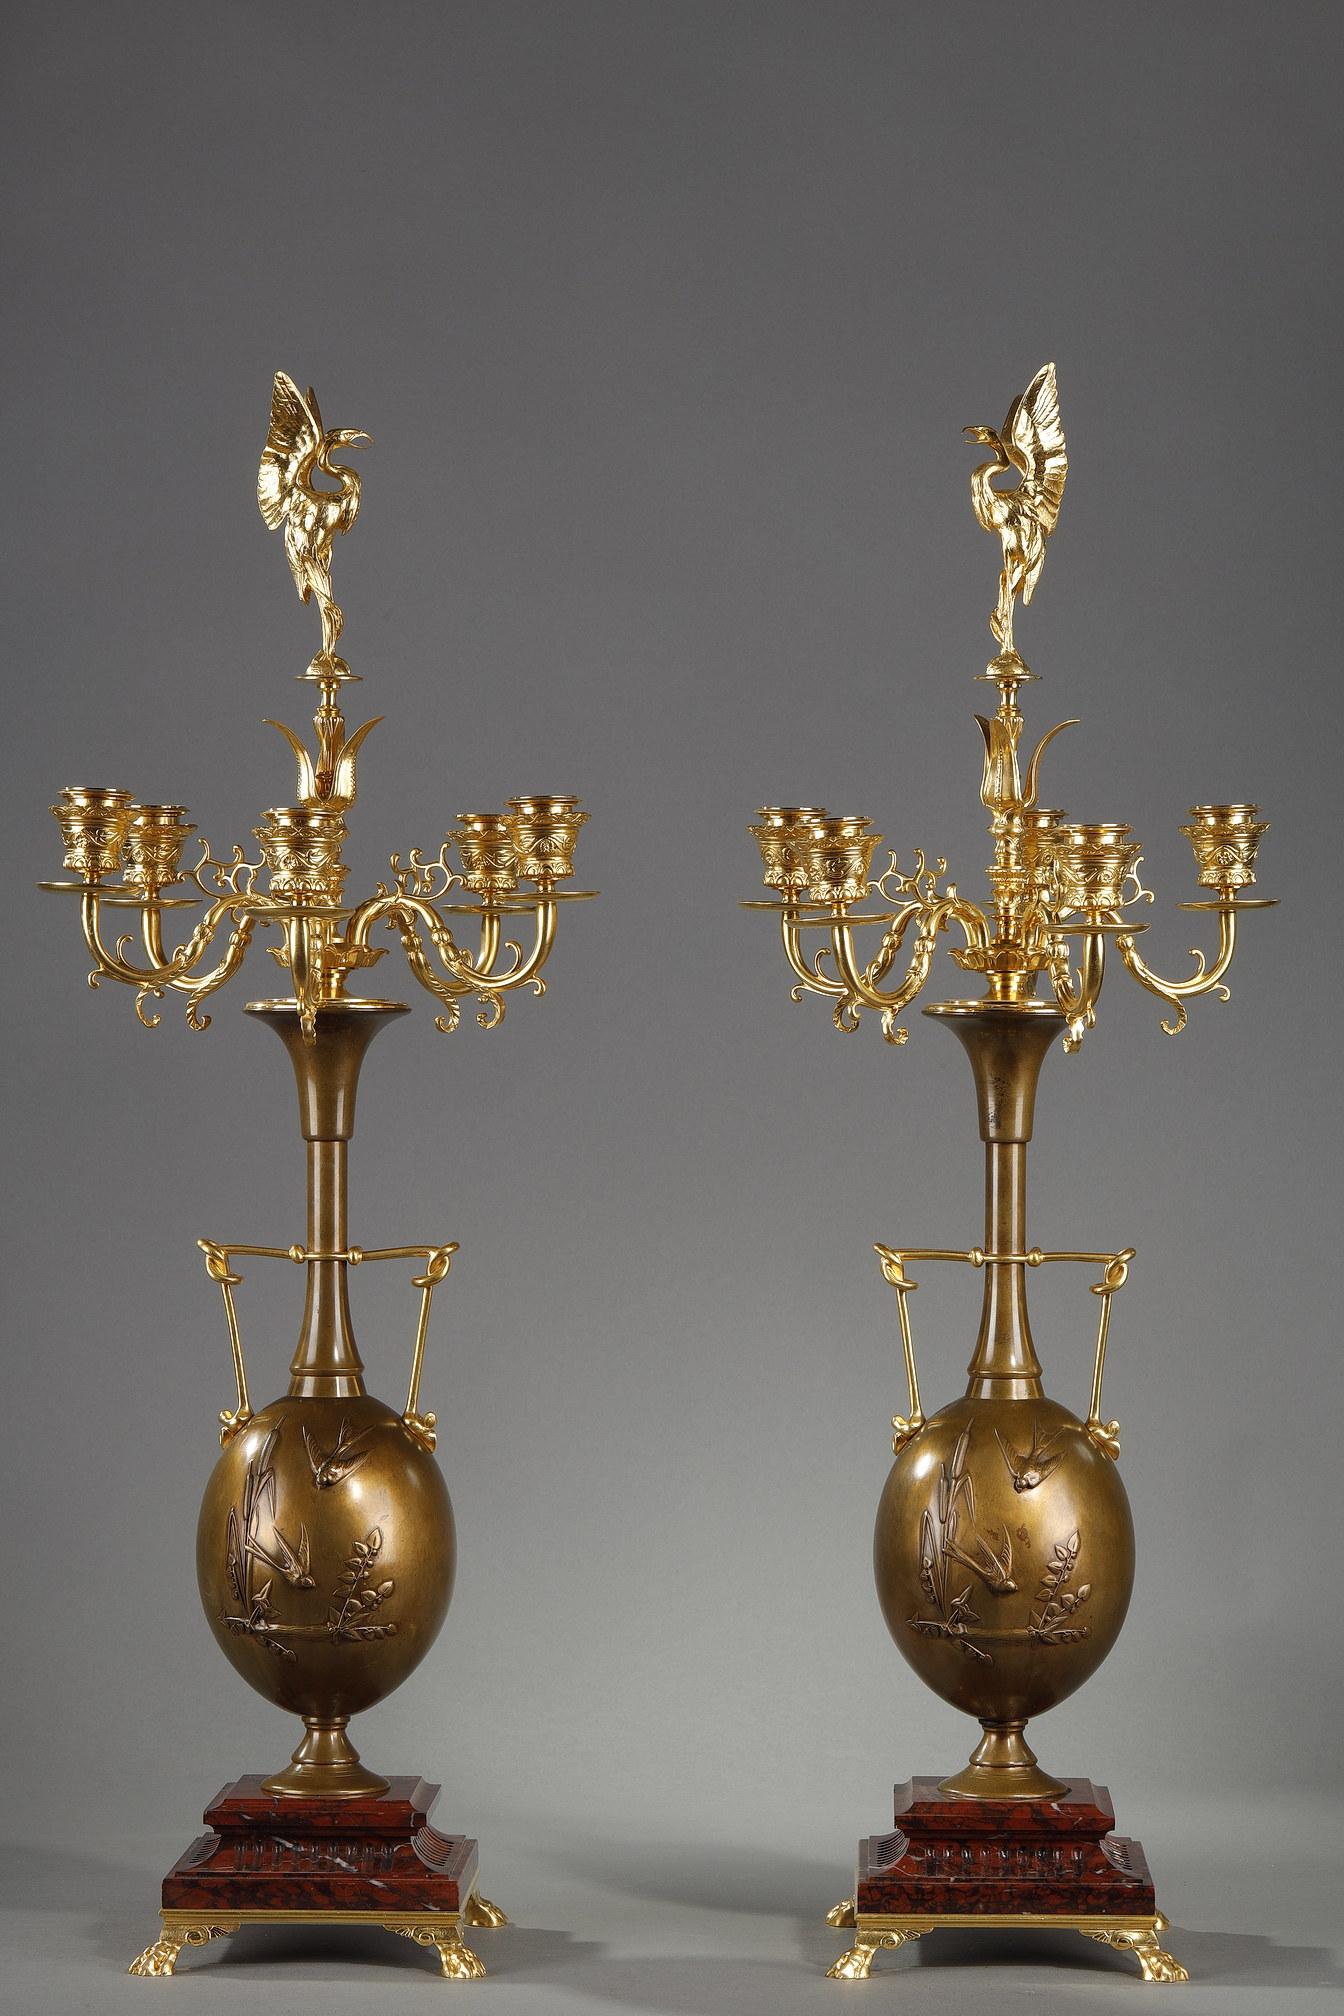 Paire de candélabres en bronze et bronzes signés Henry Cahieux (1825-1854) et Ferdinand Barbedienne. Le fût en forme de vase à deux anses est décoré d'oiseaux parmi des branches, d'où s'échappent quatre bras de lumière en bronze doré surmontés d'un